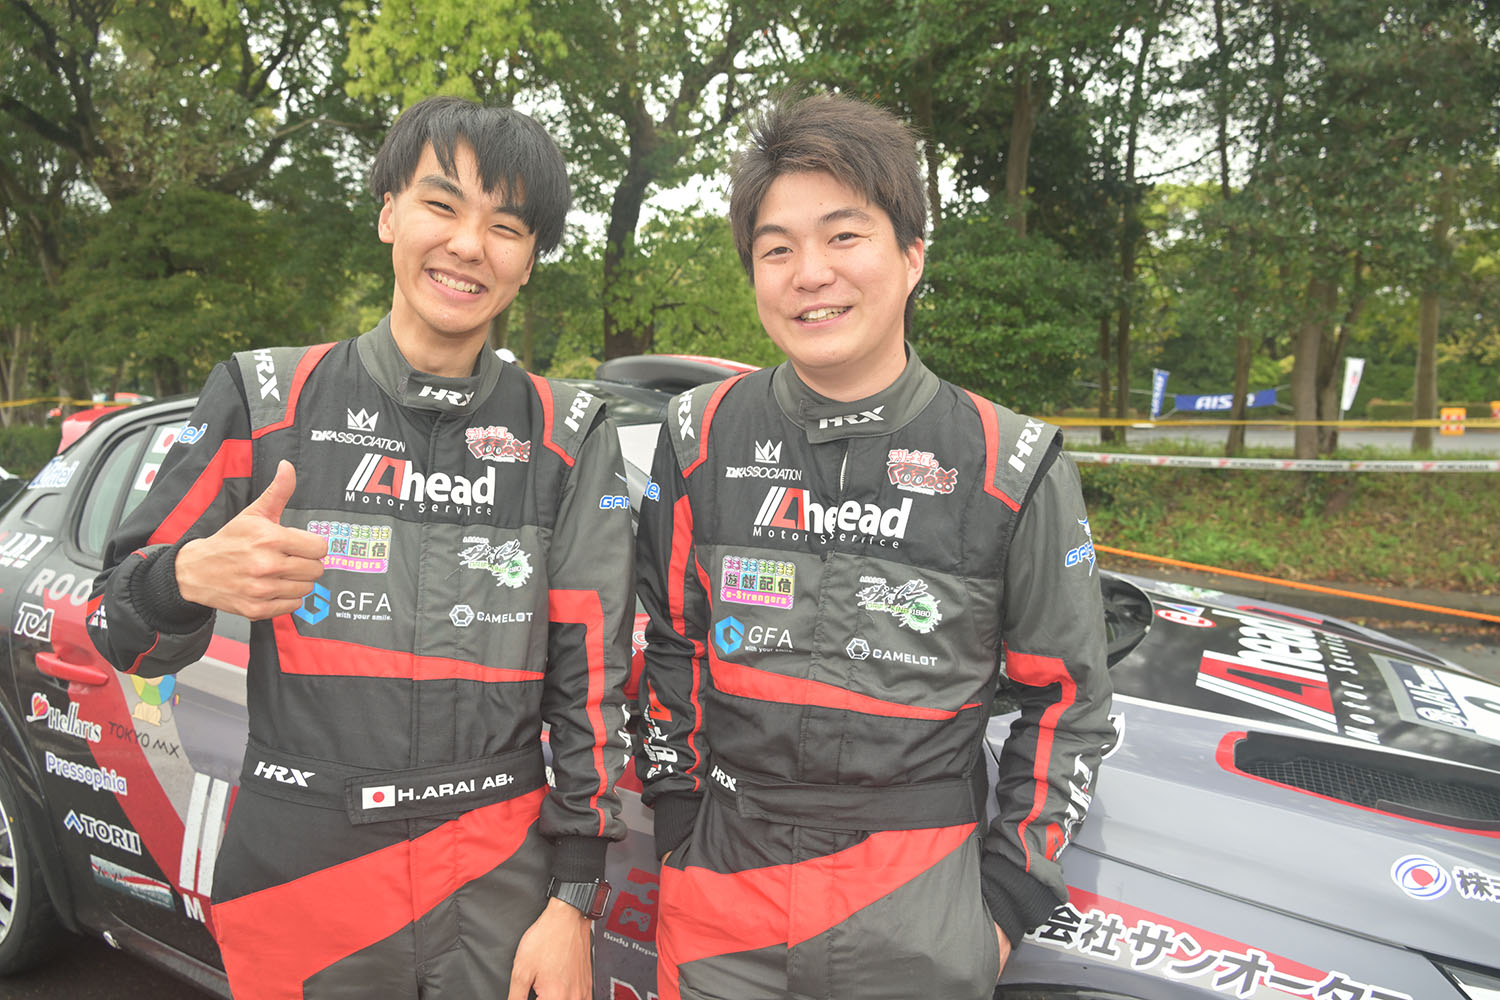 全日本ラリー選手権第3戦にプジョー208 Rally4で参戦した新井大輝選手の活躍